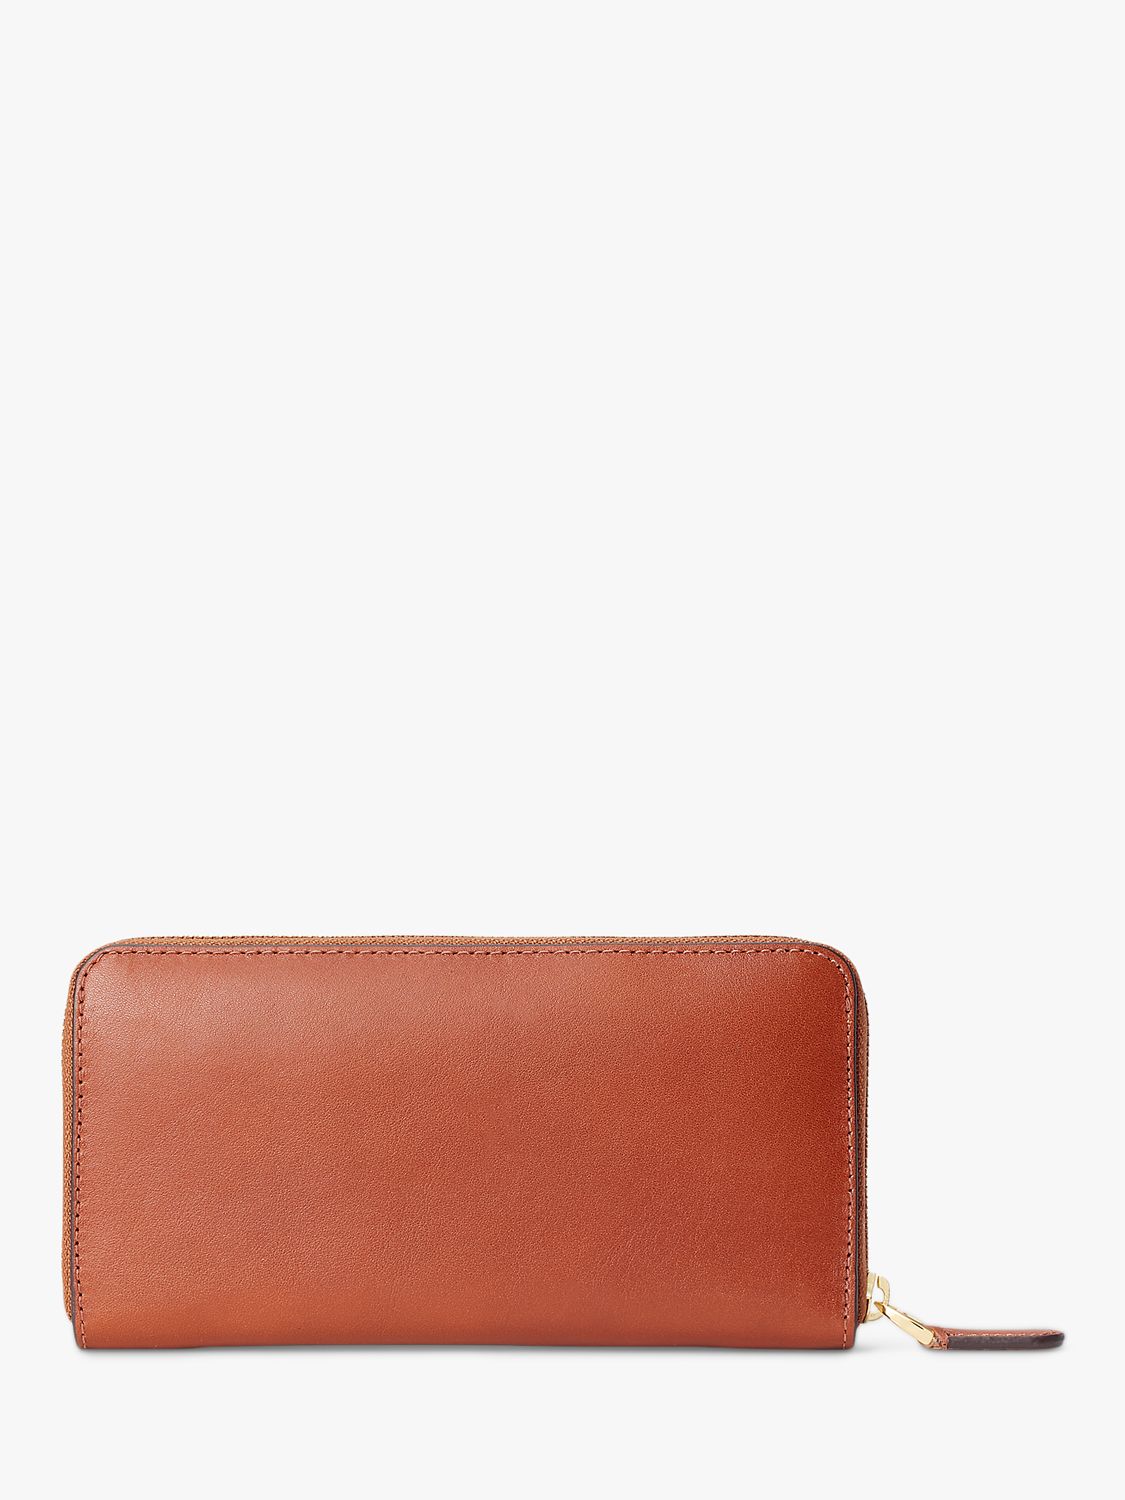 Buy Lauren Ralph Lauren Continental Leather Zip Purse Online at johnlewis.com